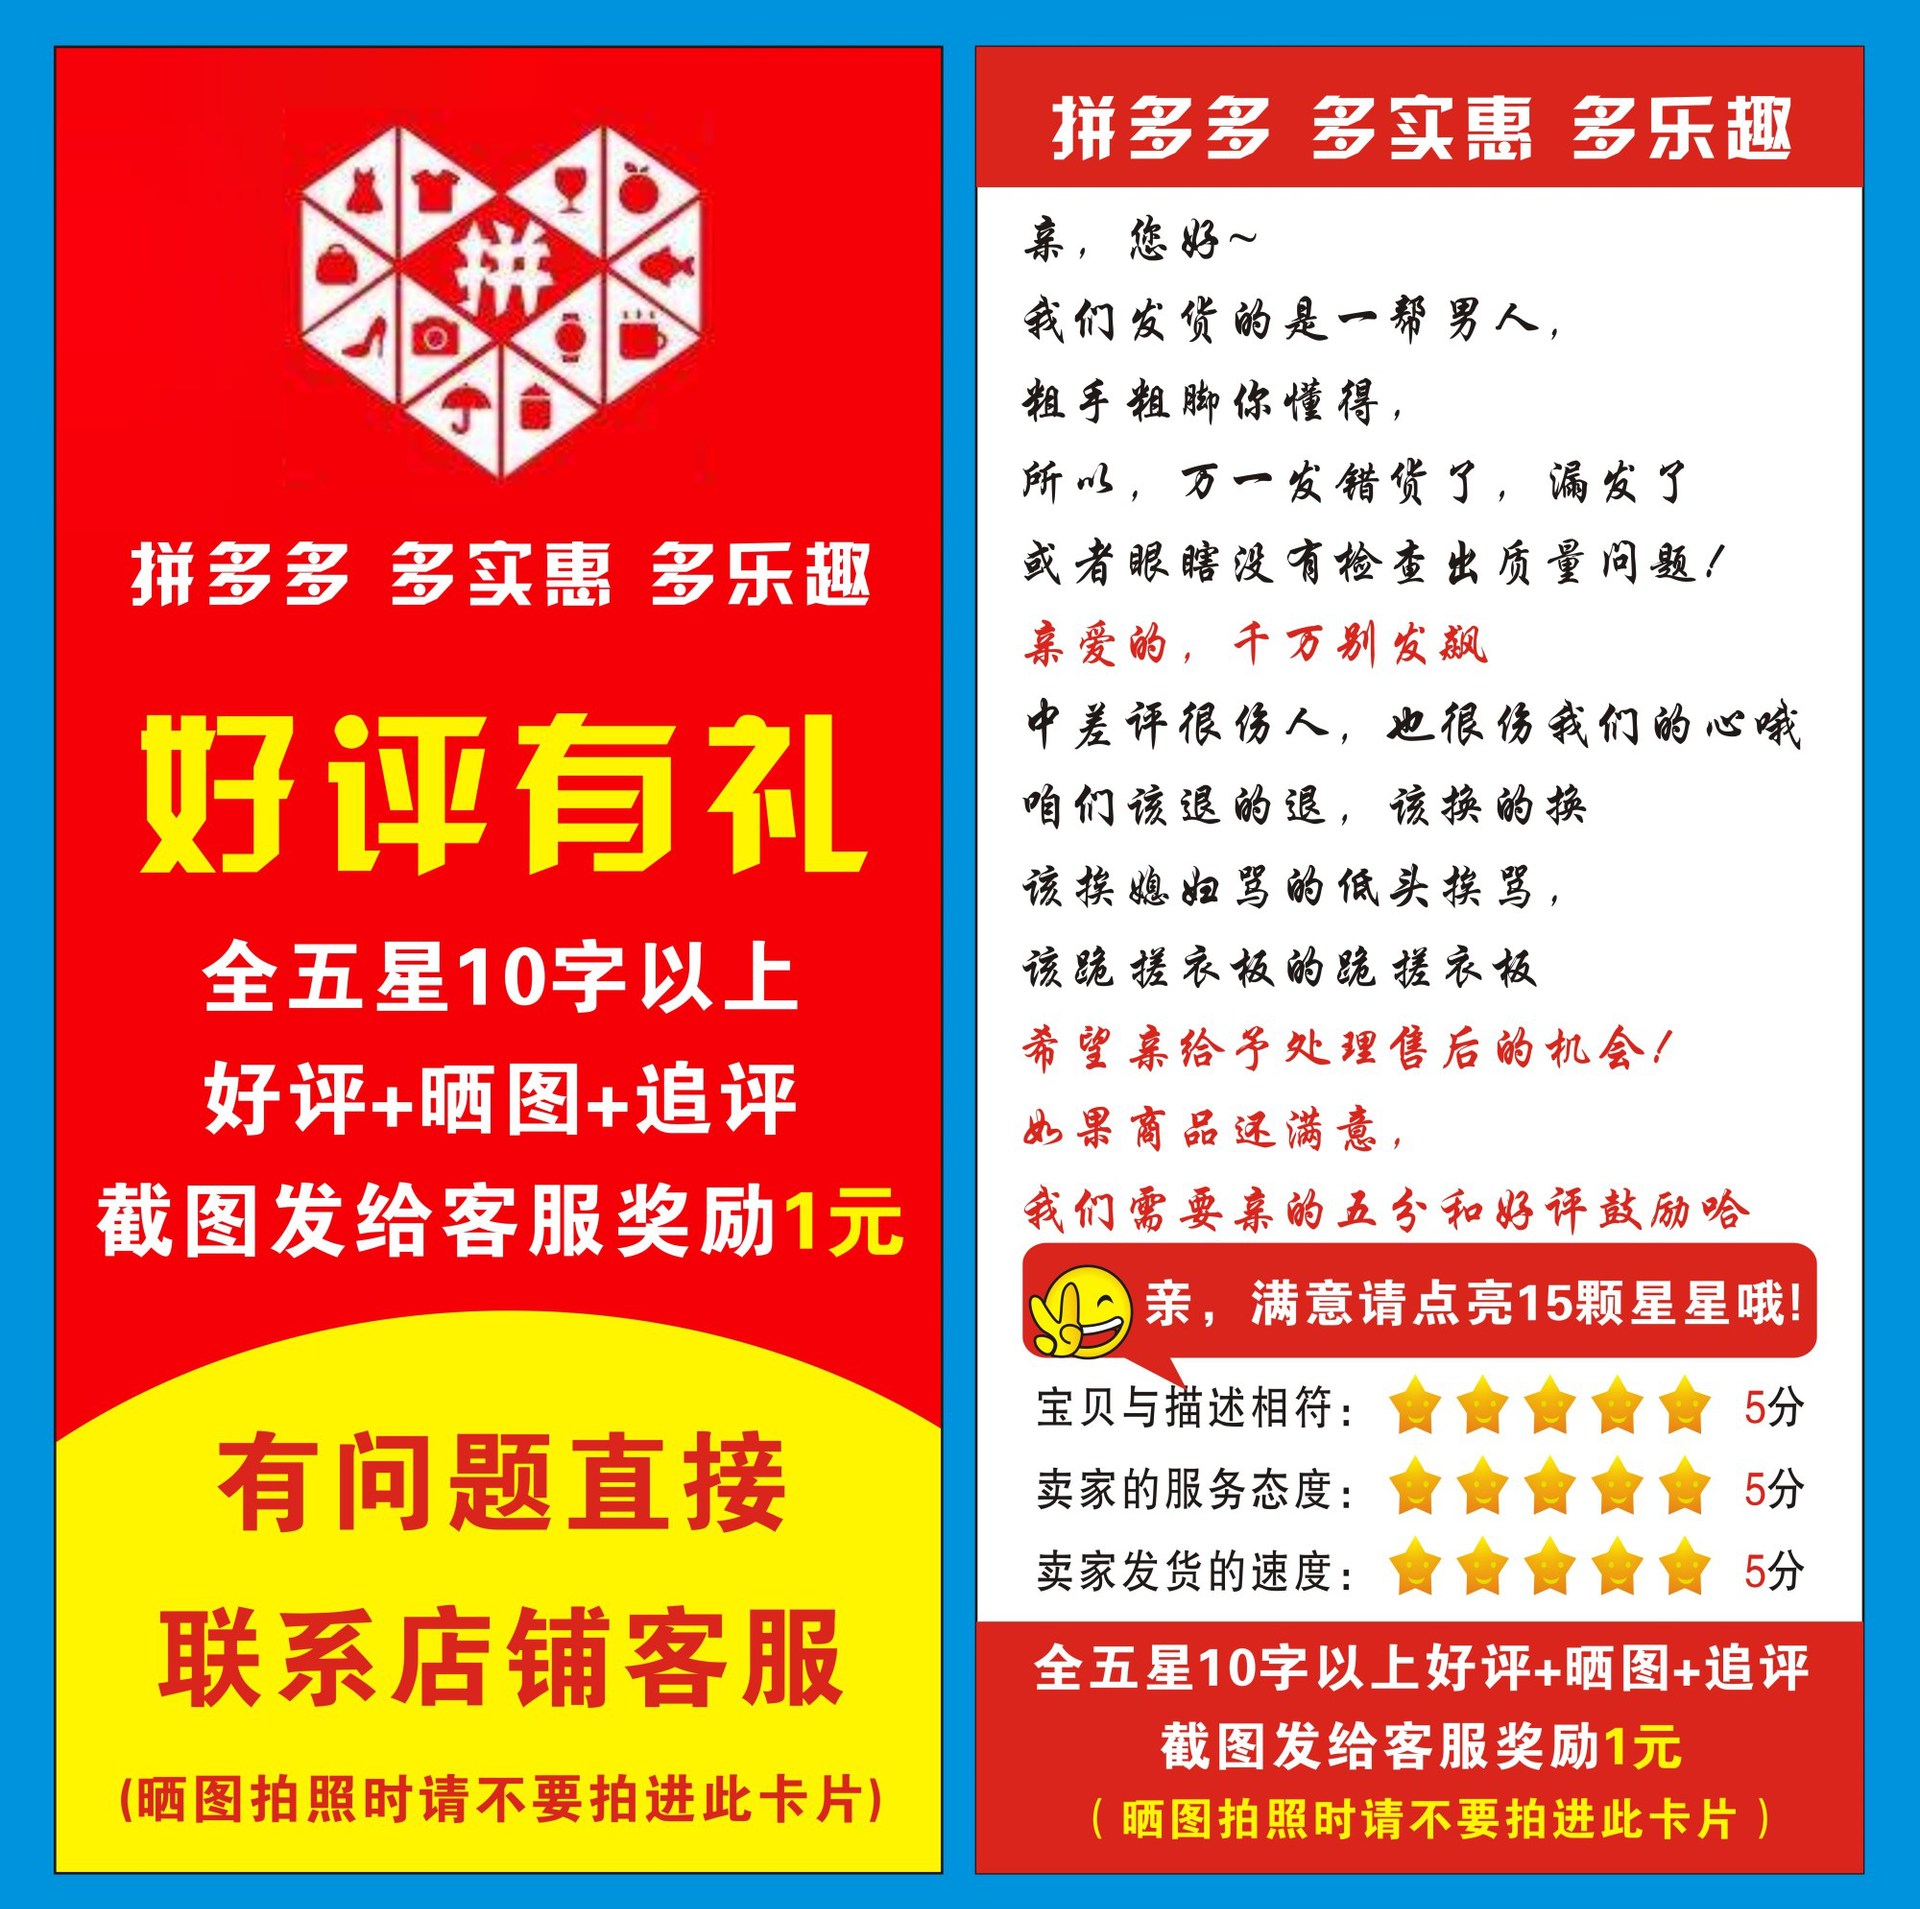 立个flag：2020年愿望清单-搜狐大视野-搜狐新闻